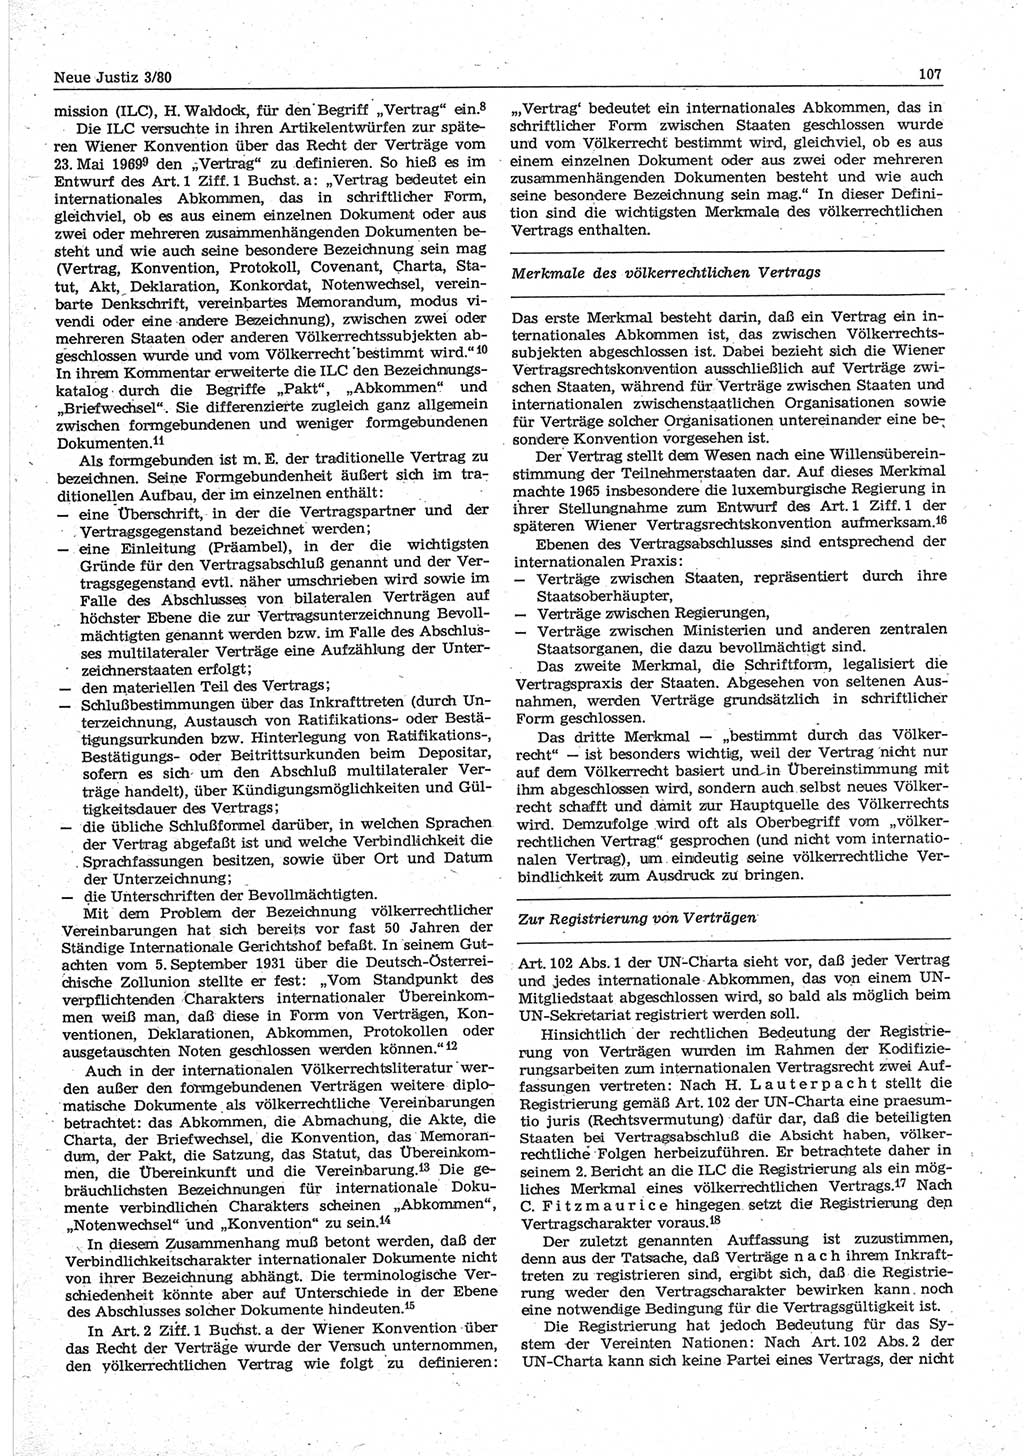 Neue Justiz (NJ), Zeitschrift für sozialistisches Recht und Gesetzlichkeit [Deutsche Demokratische Republik (DDR)], 34. Jahrgang 1980, Seite 107 (NJ DDR 1980, S. 107)